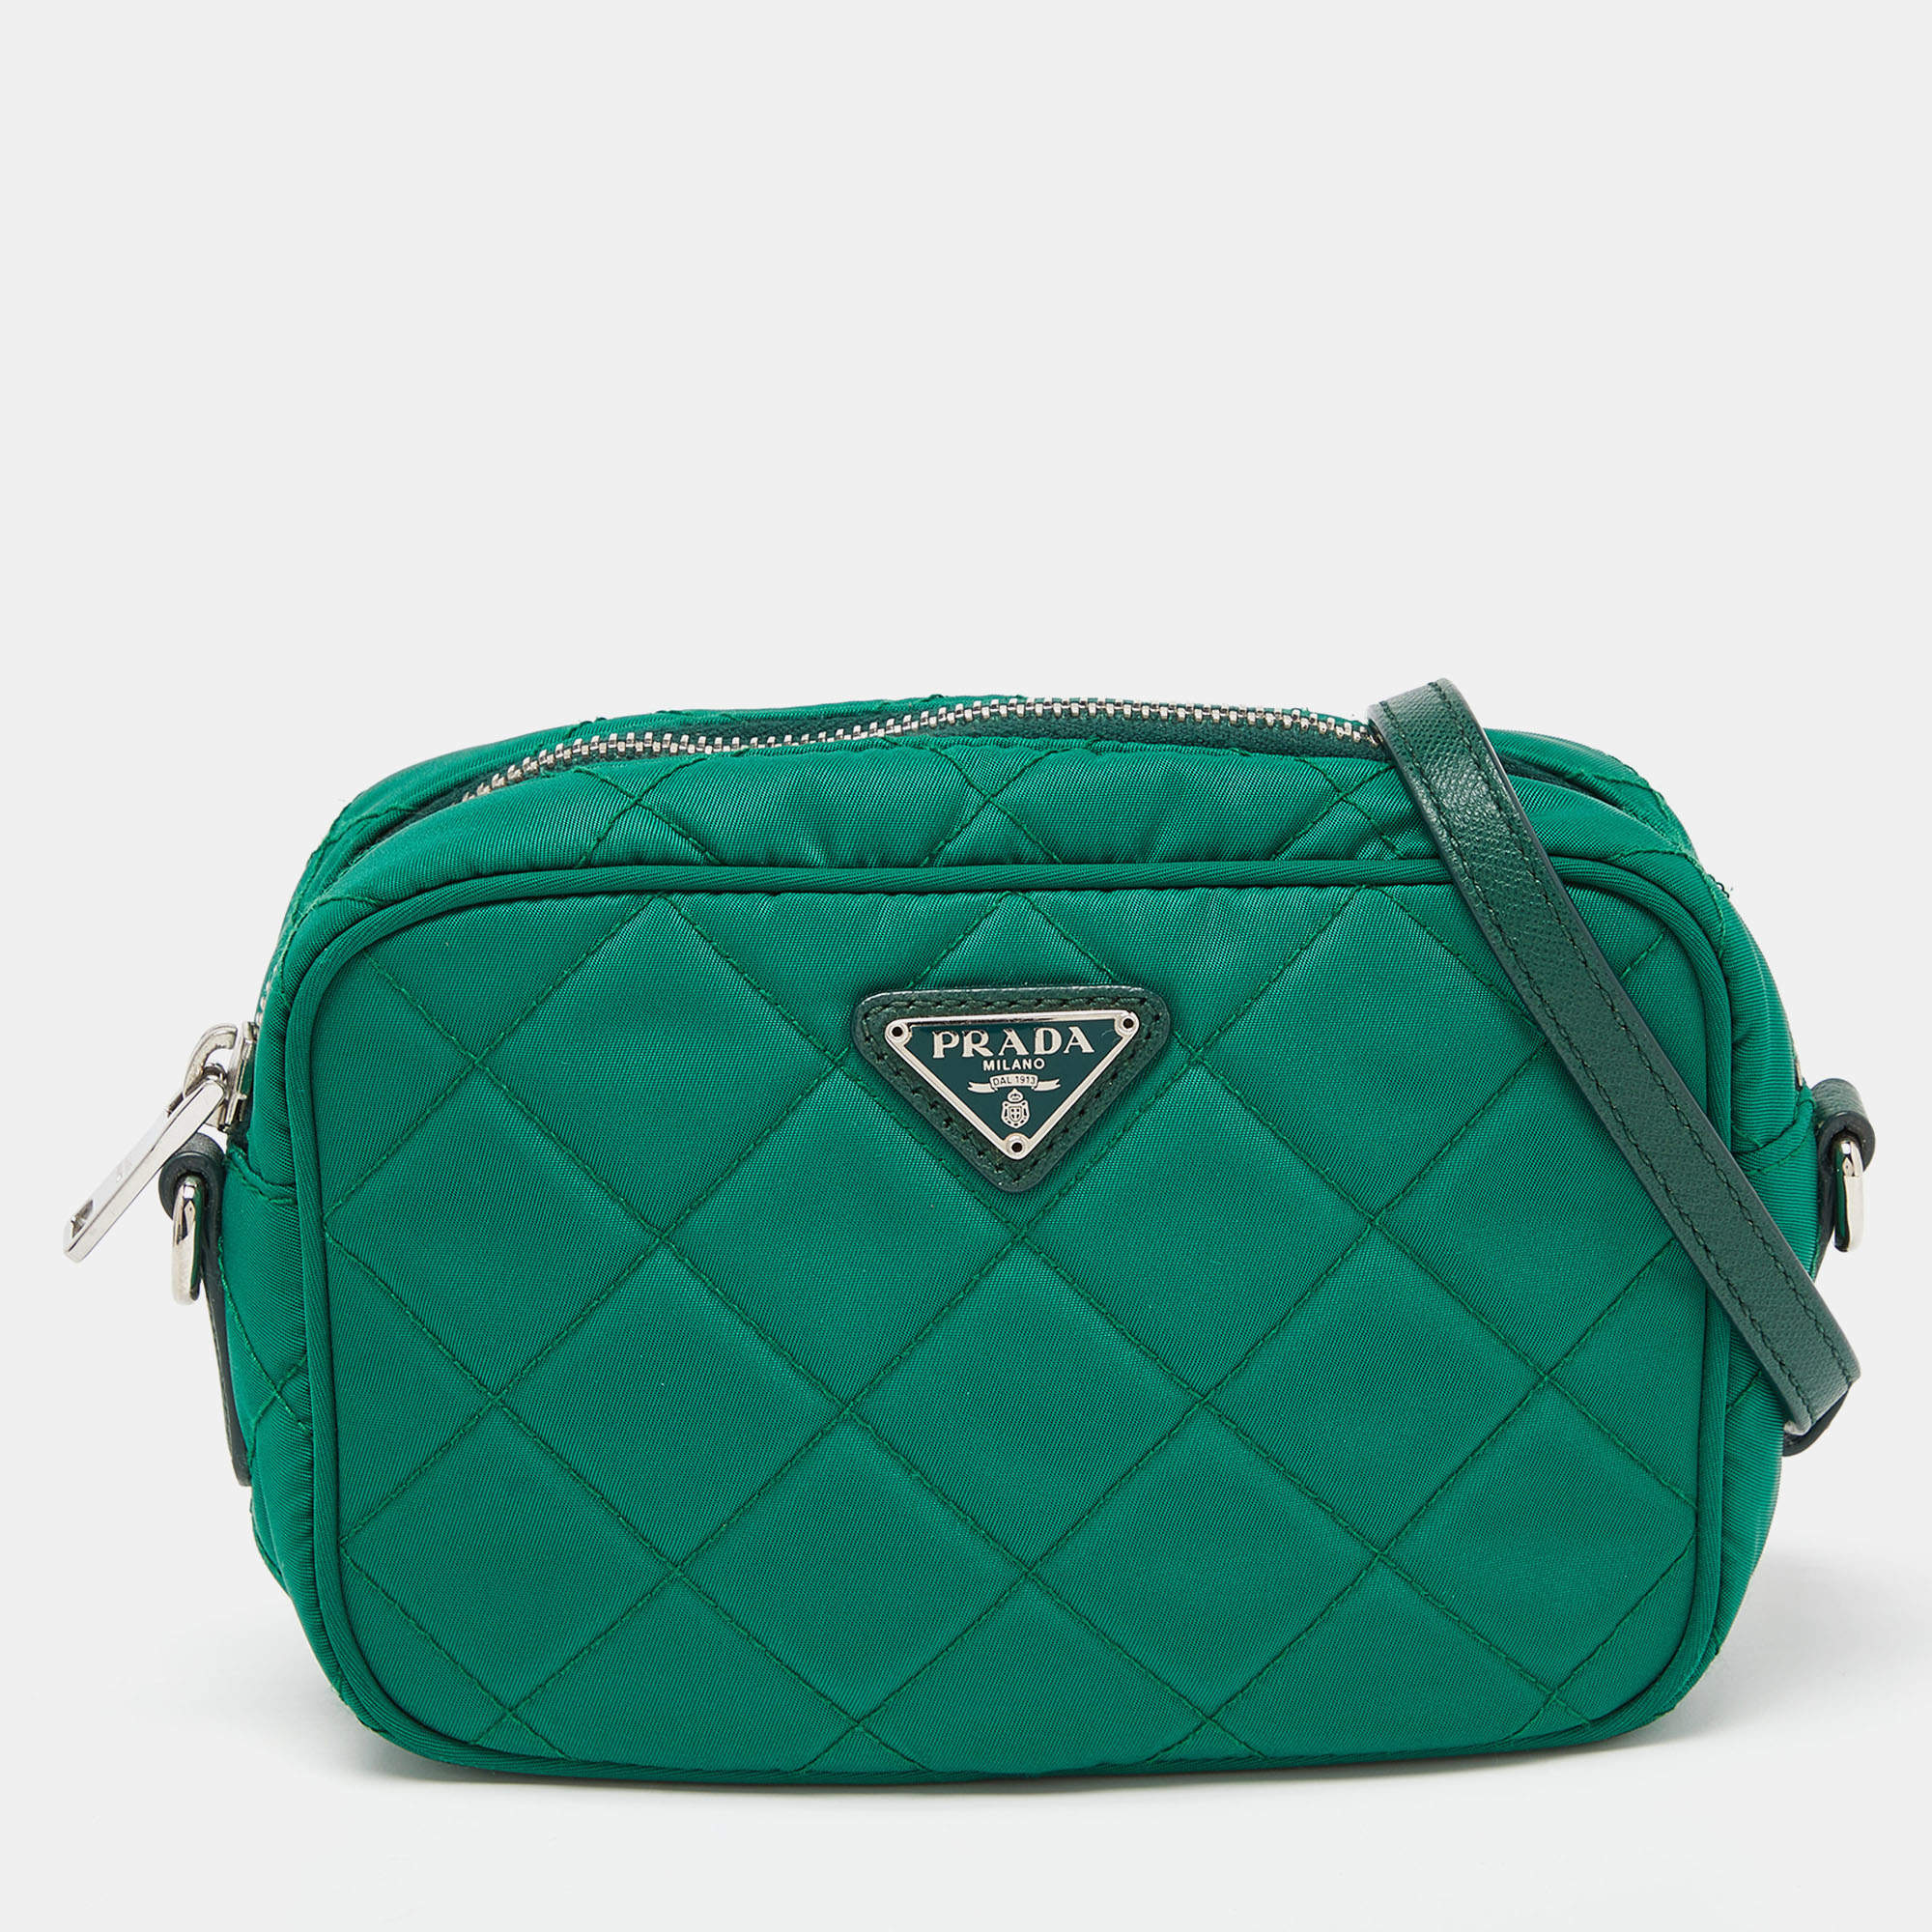 Emerald Green Prada Re-edition 2005 Saffiano Leather Bag | PRADA